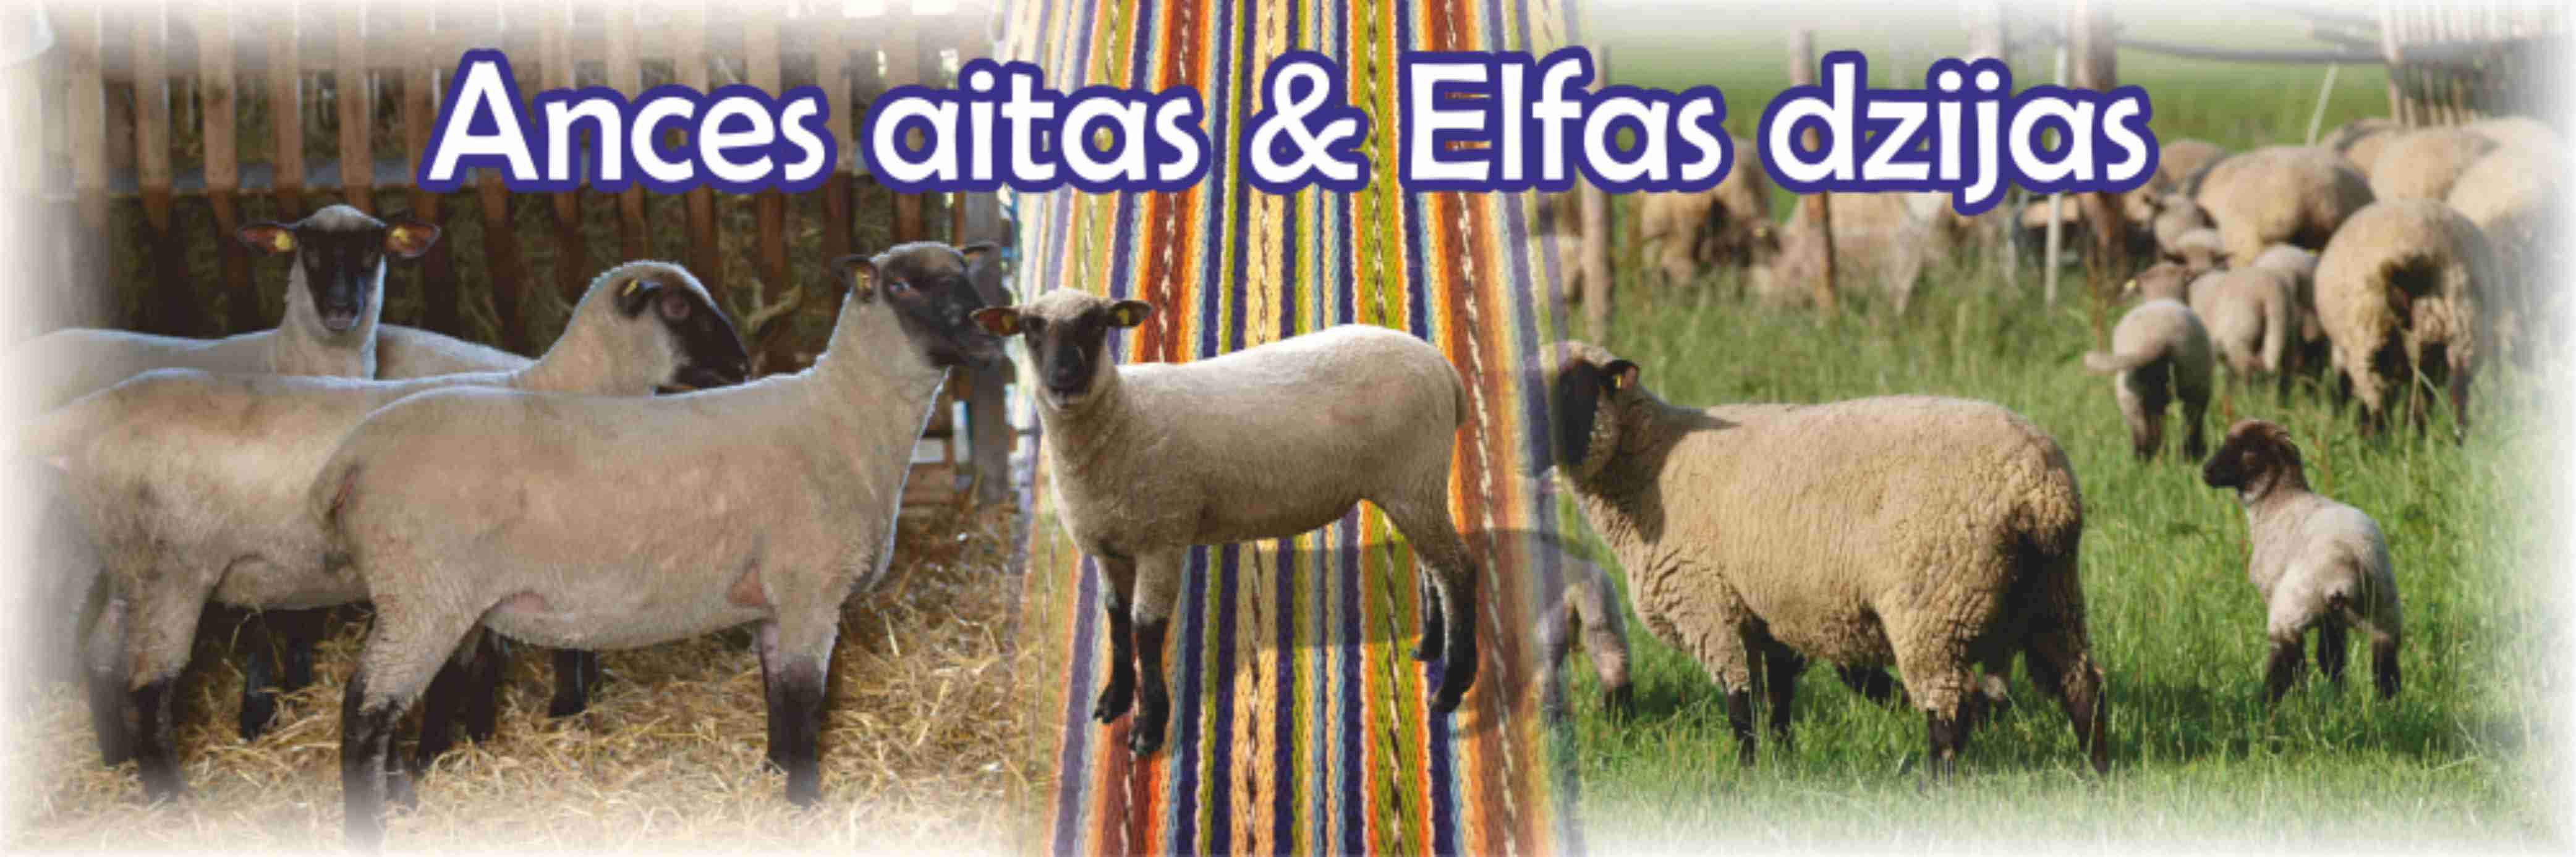 Ances AITAS & ELFAS dzijas